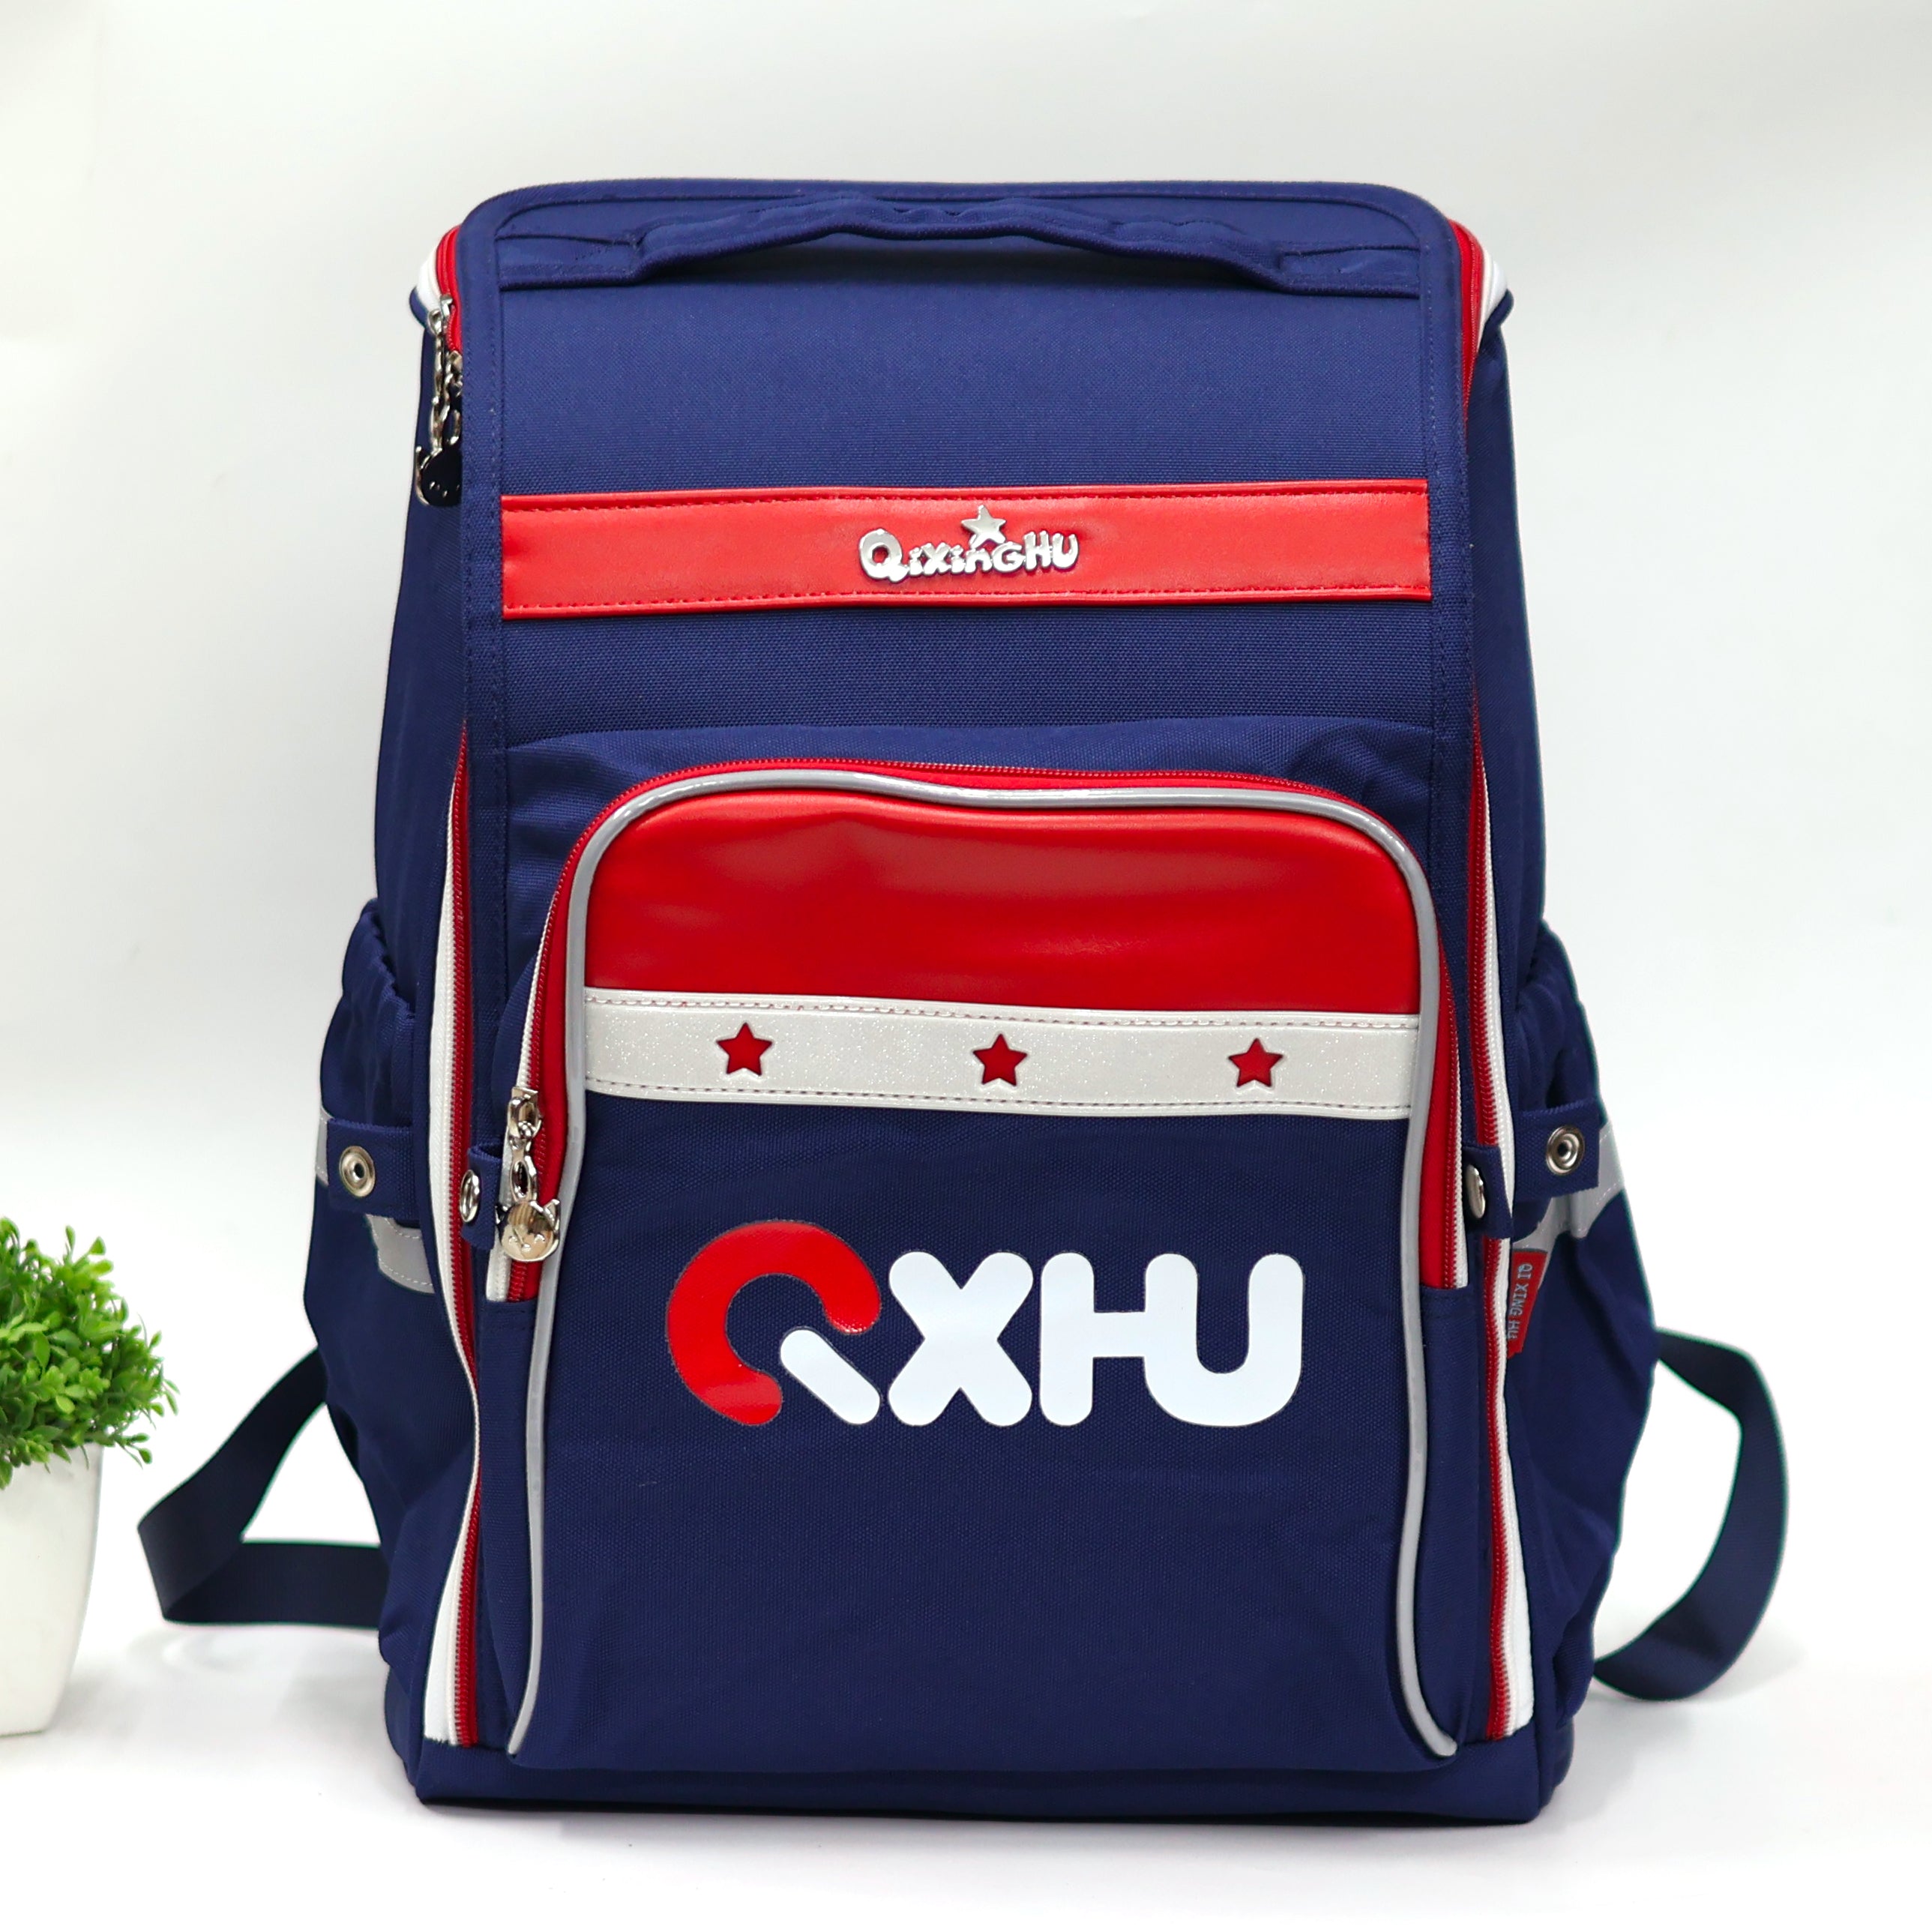 Khadim Blue School Bag for Kids